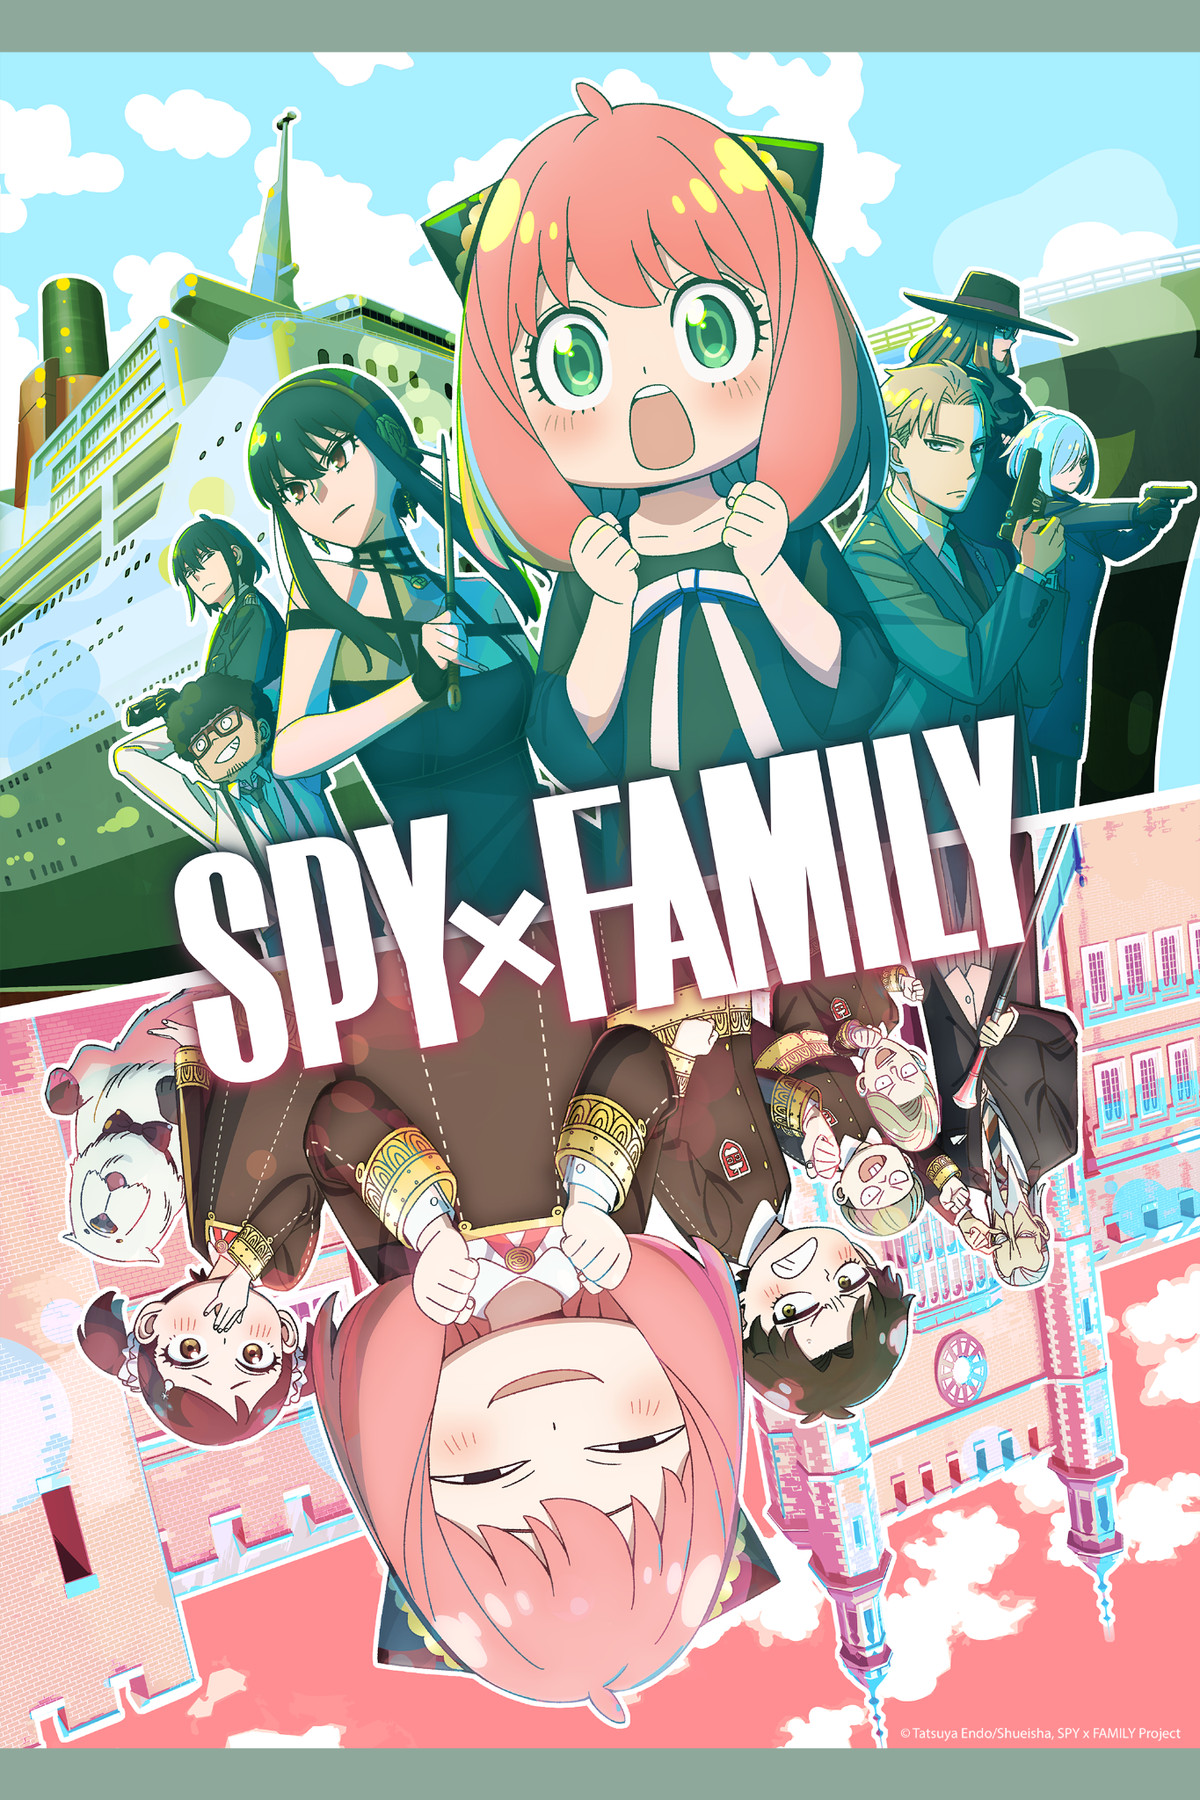 Anya från Spy x Family säsong 2 tillsammans med Loid, Yor och andra spioner på toppen, tillsammans med Anya och hennes skolkamrater längst ner